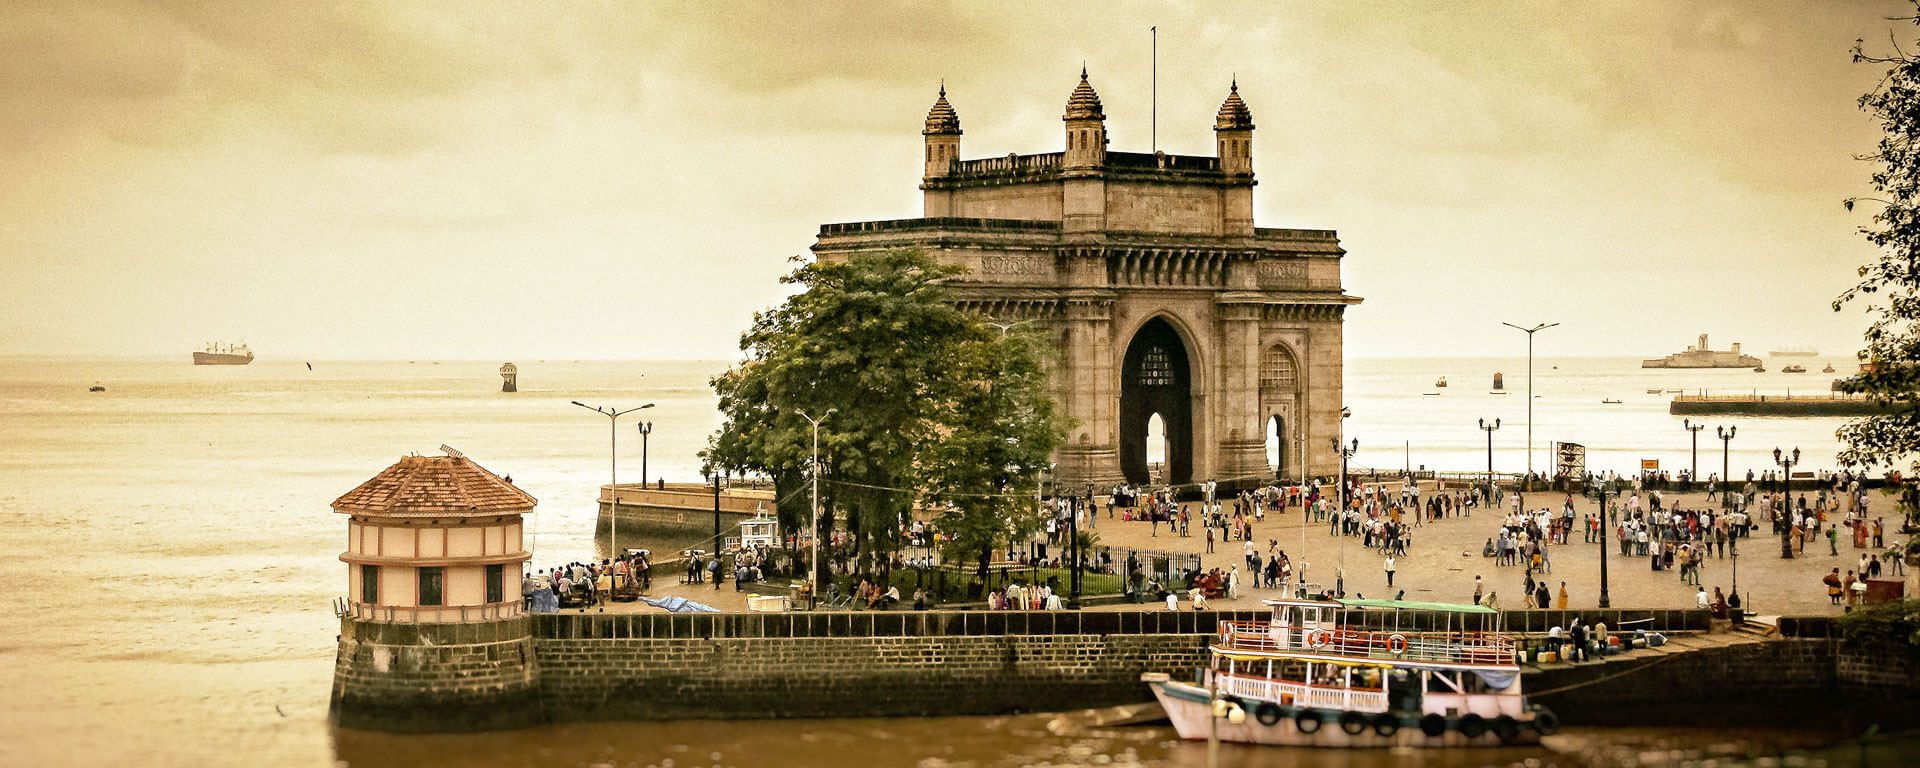 Mumbai Tour Packages